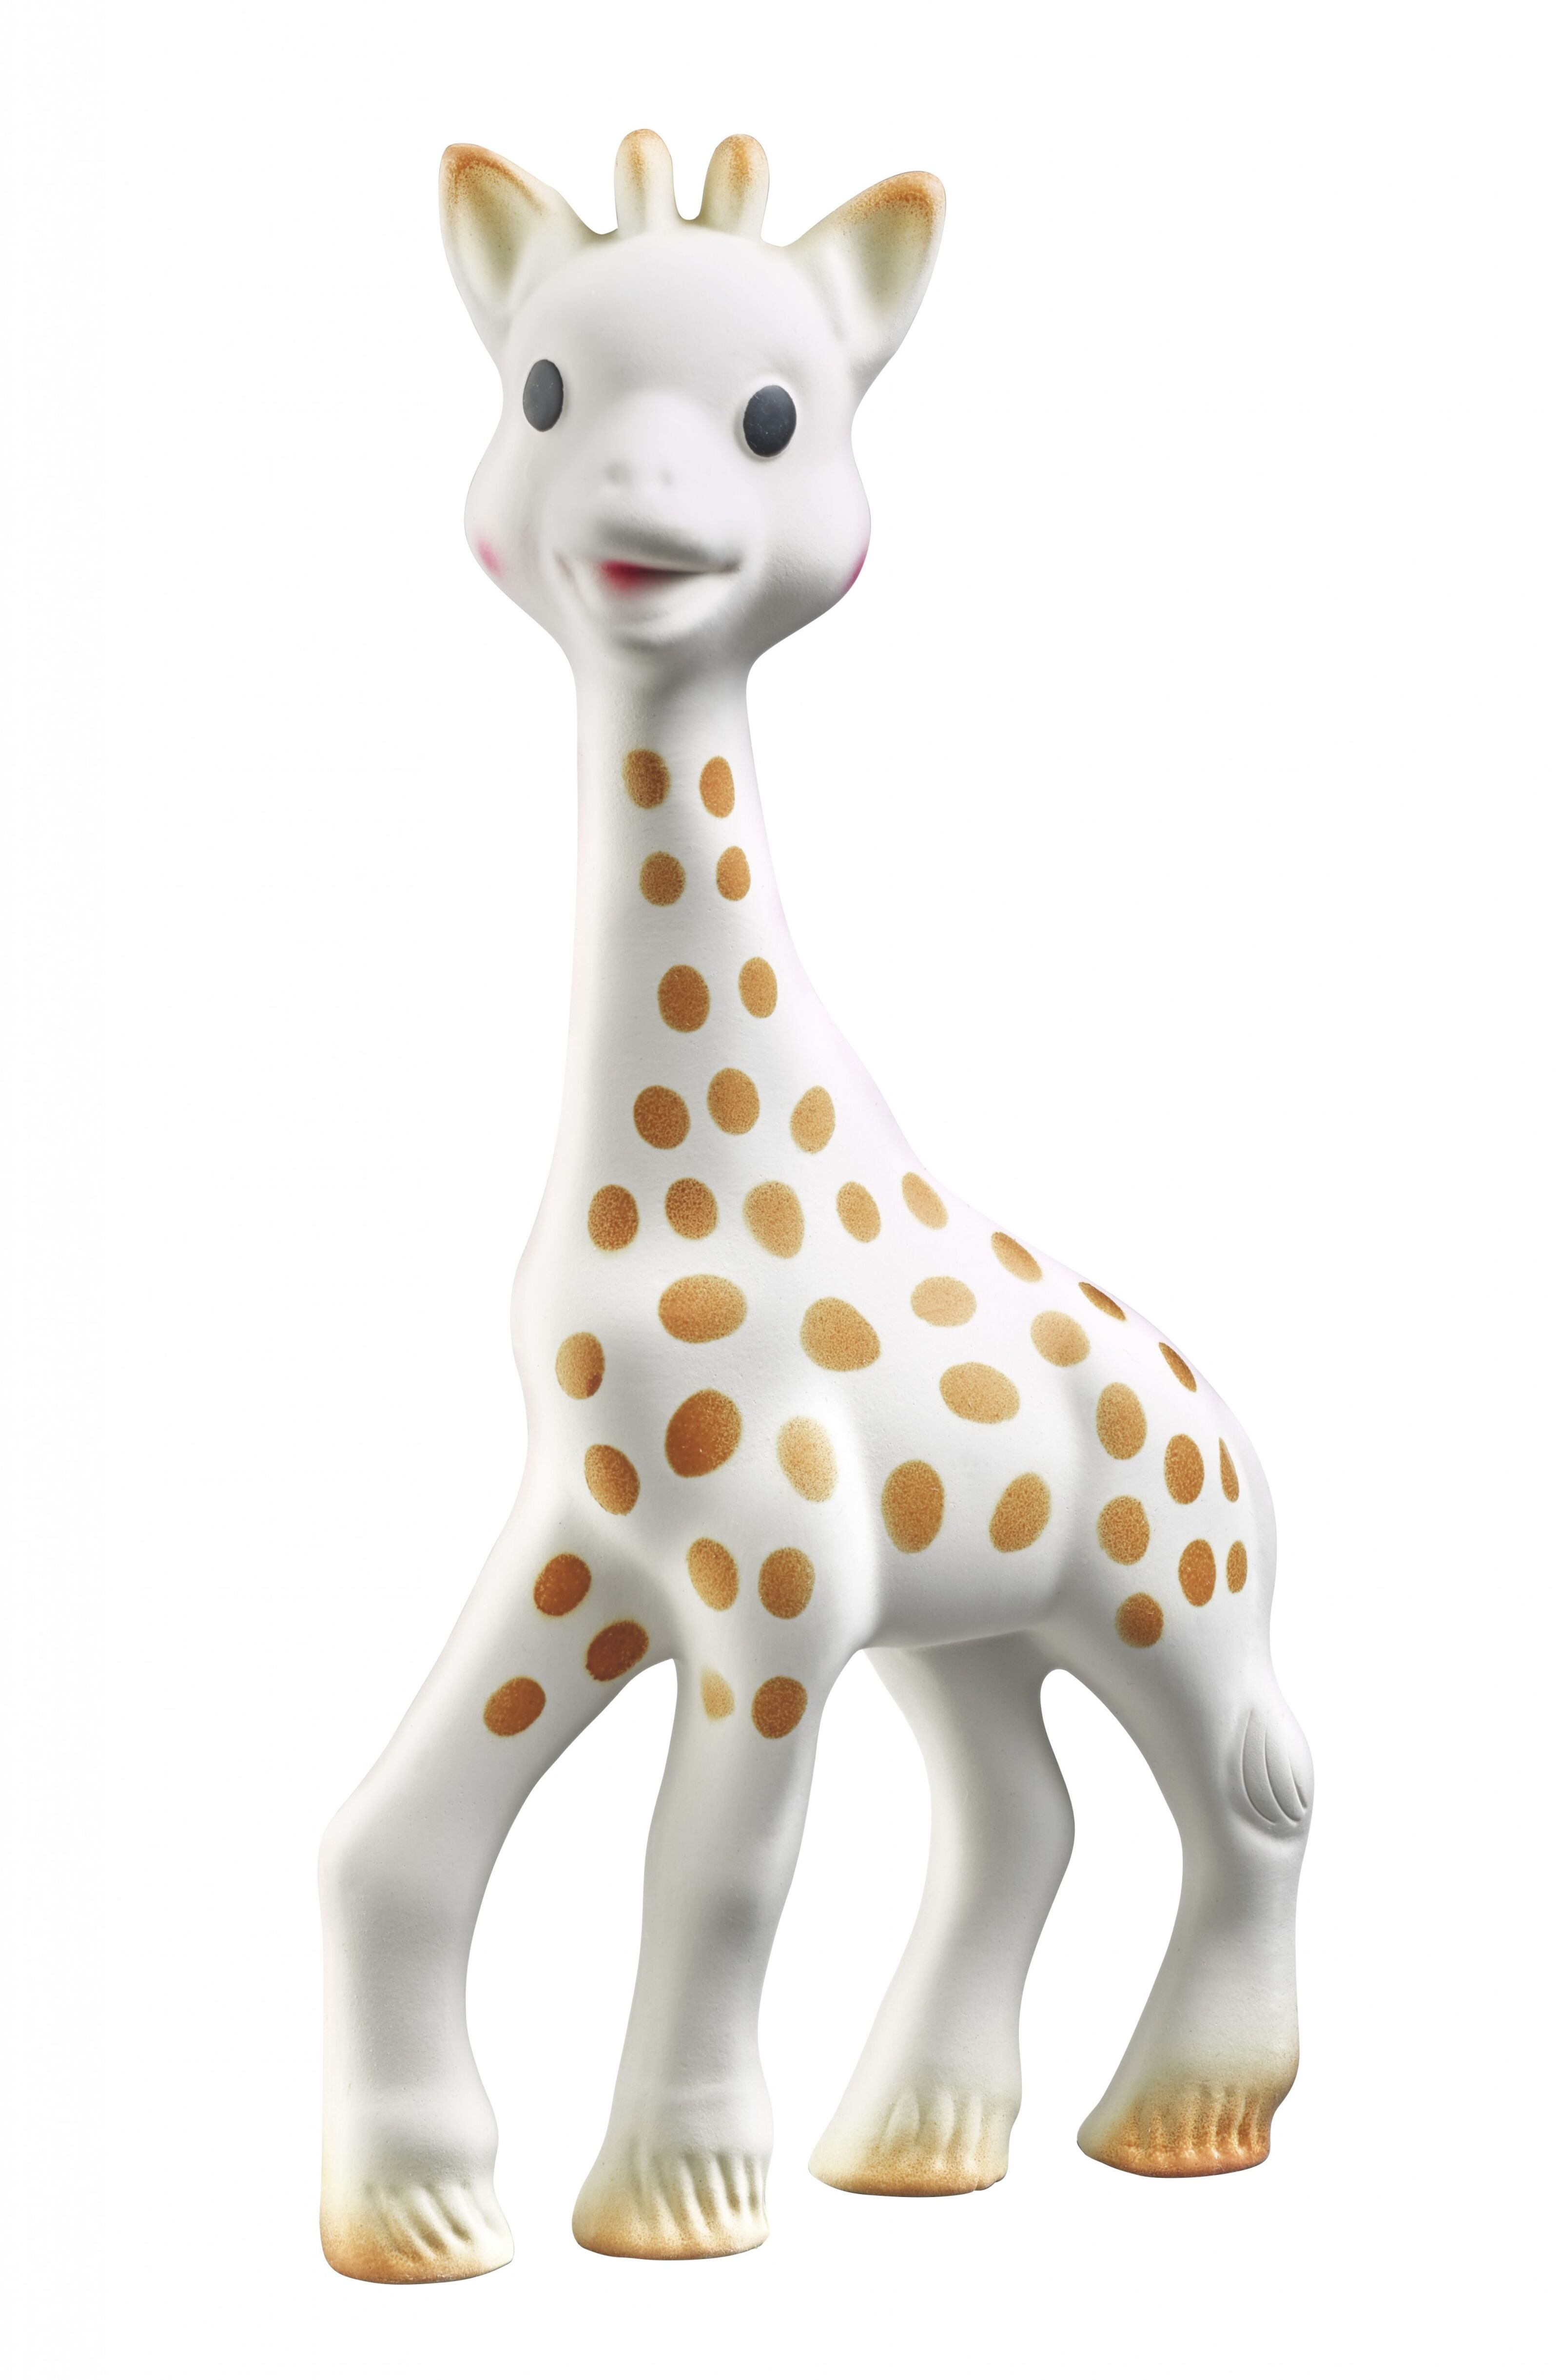 Coffret de naissance avec hochet sophie la girafe - Sophie la